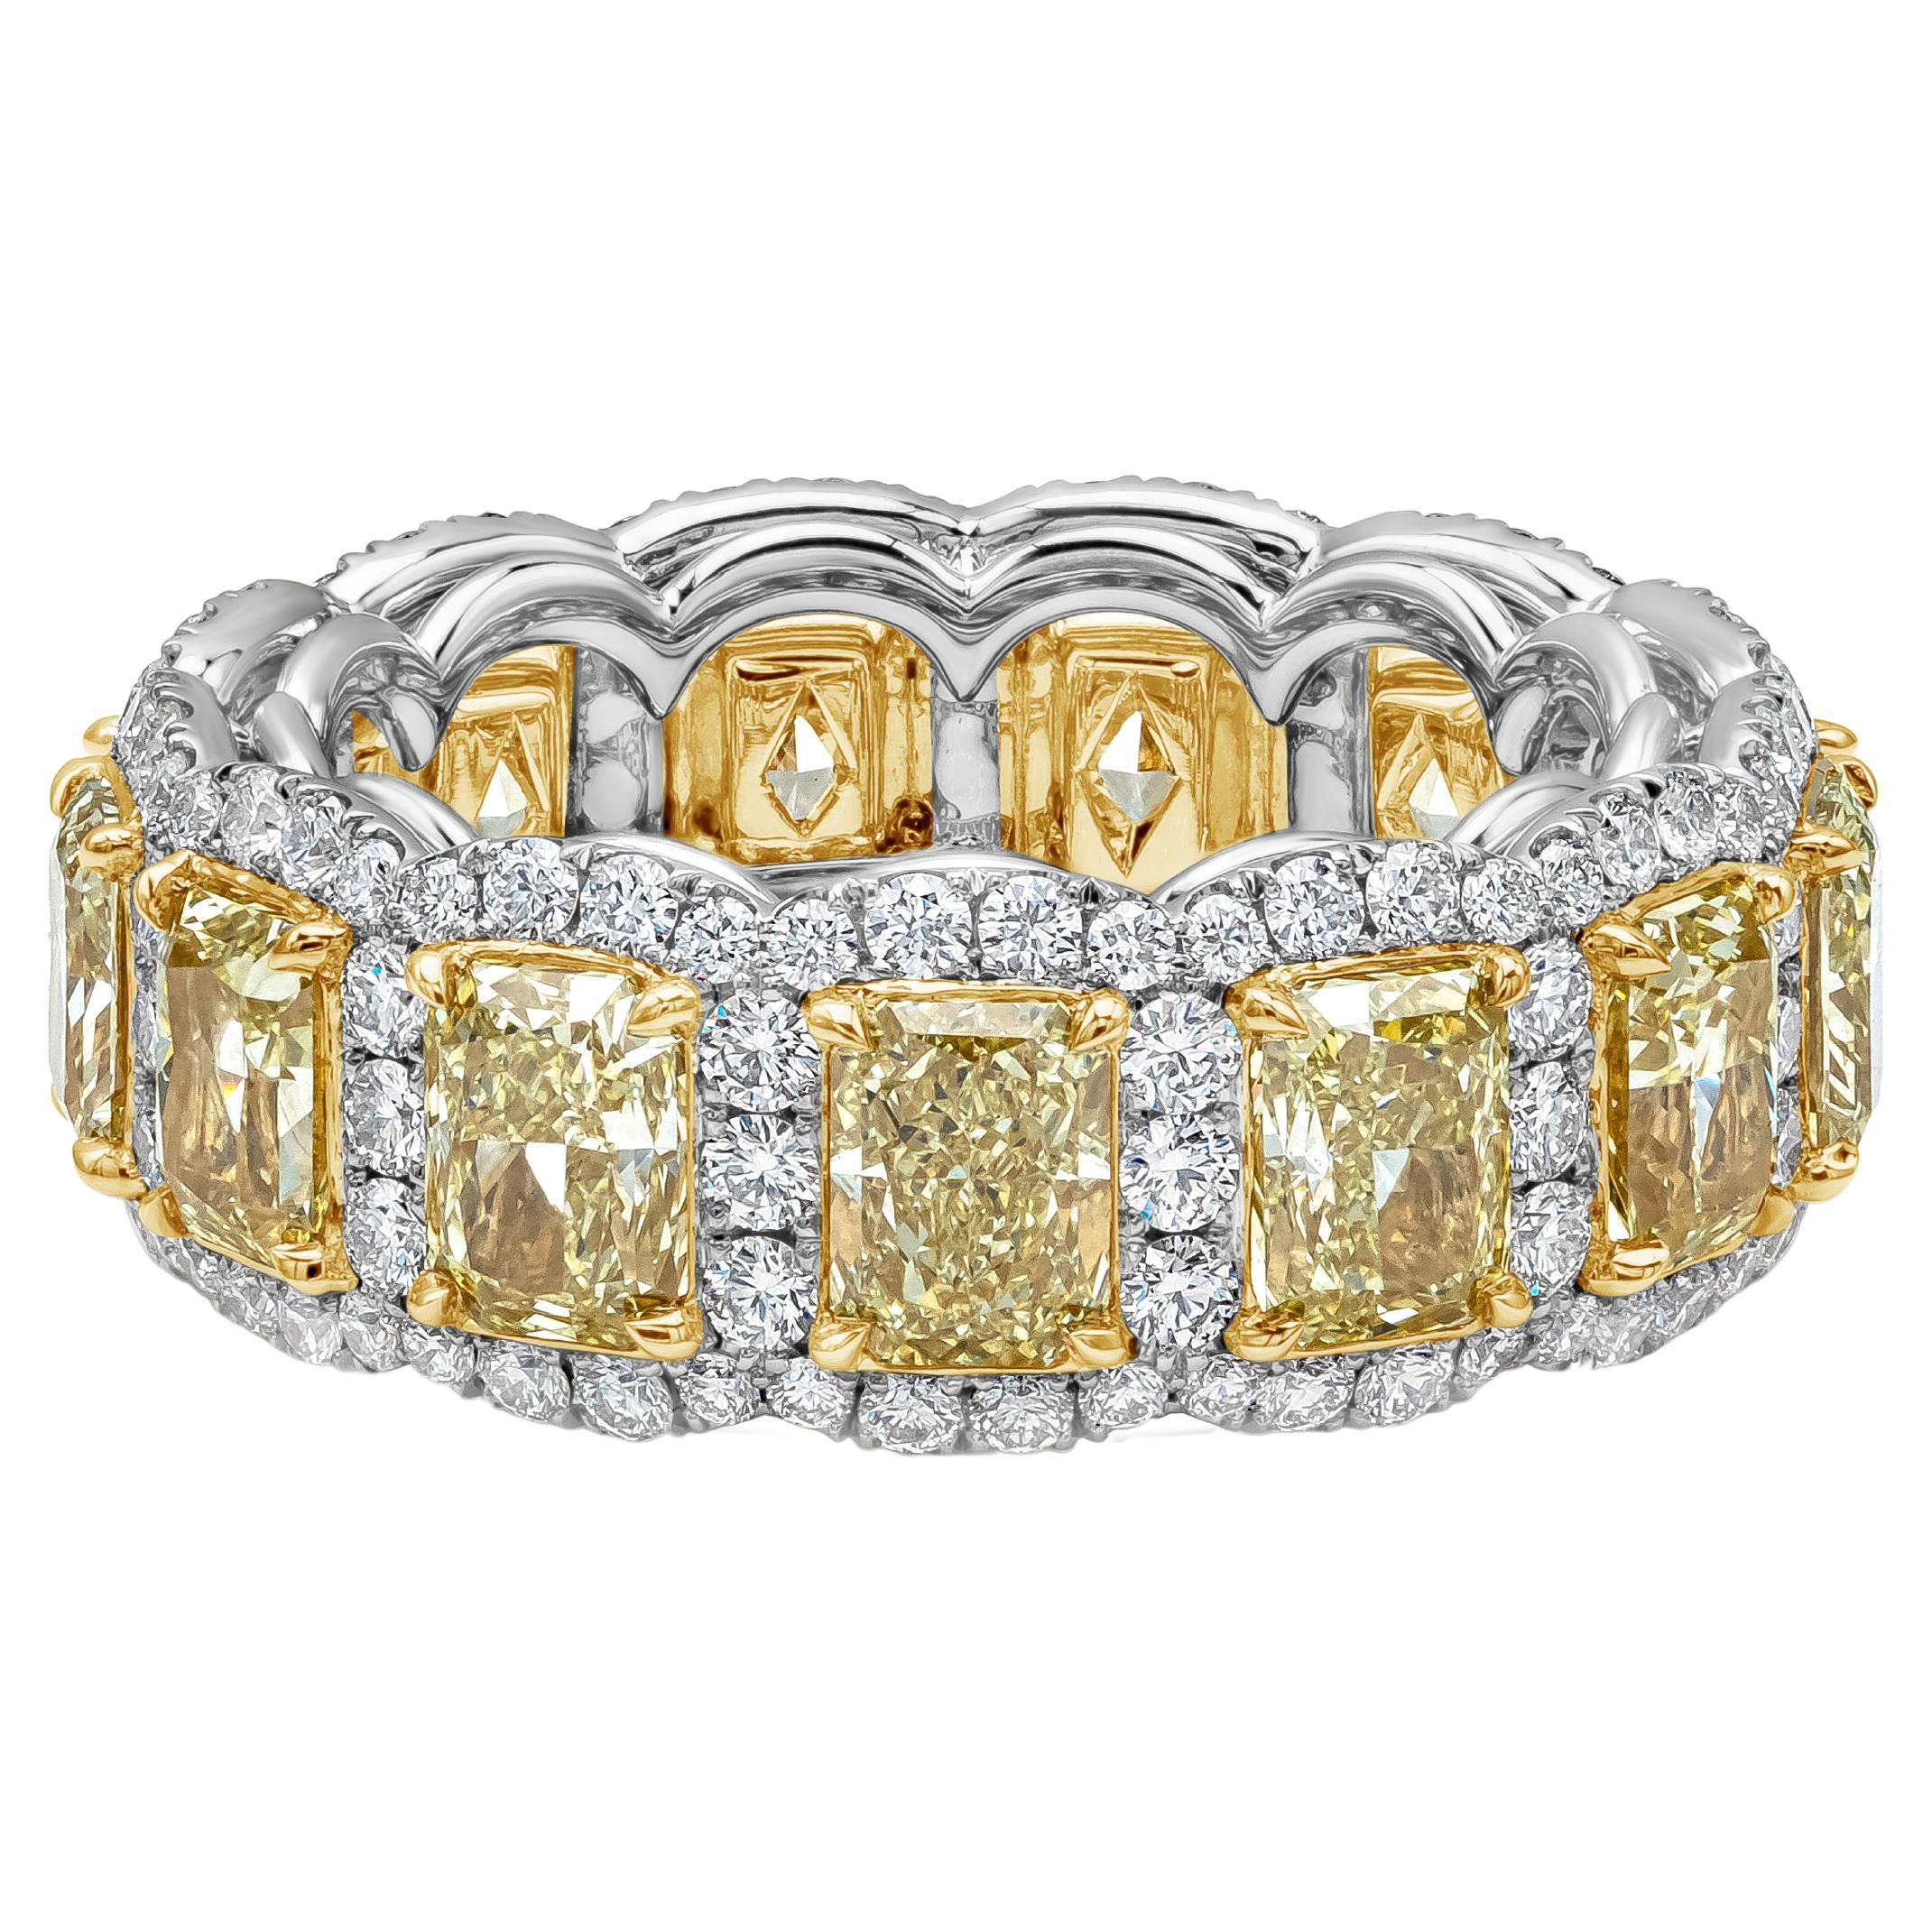 Roman Malakov, alliance d'éternité halo de diamants jaunes taille radiant de 5,33 carats